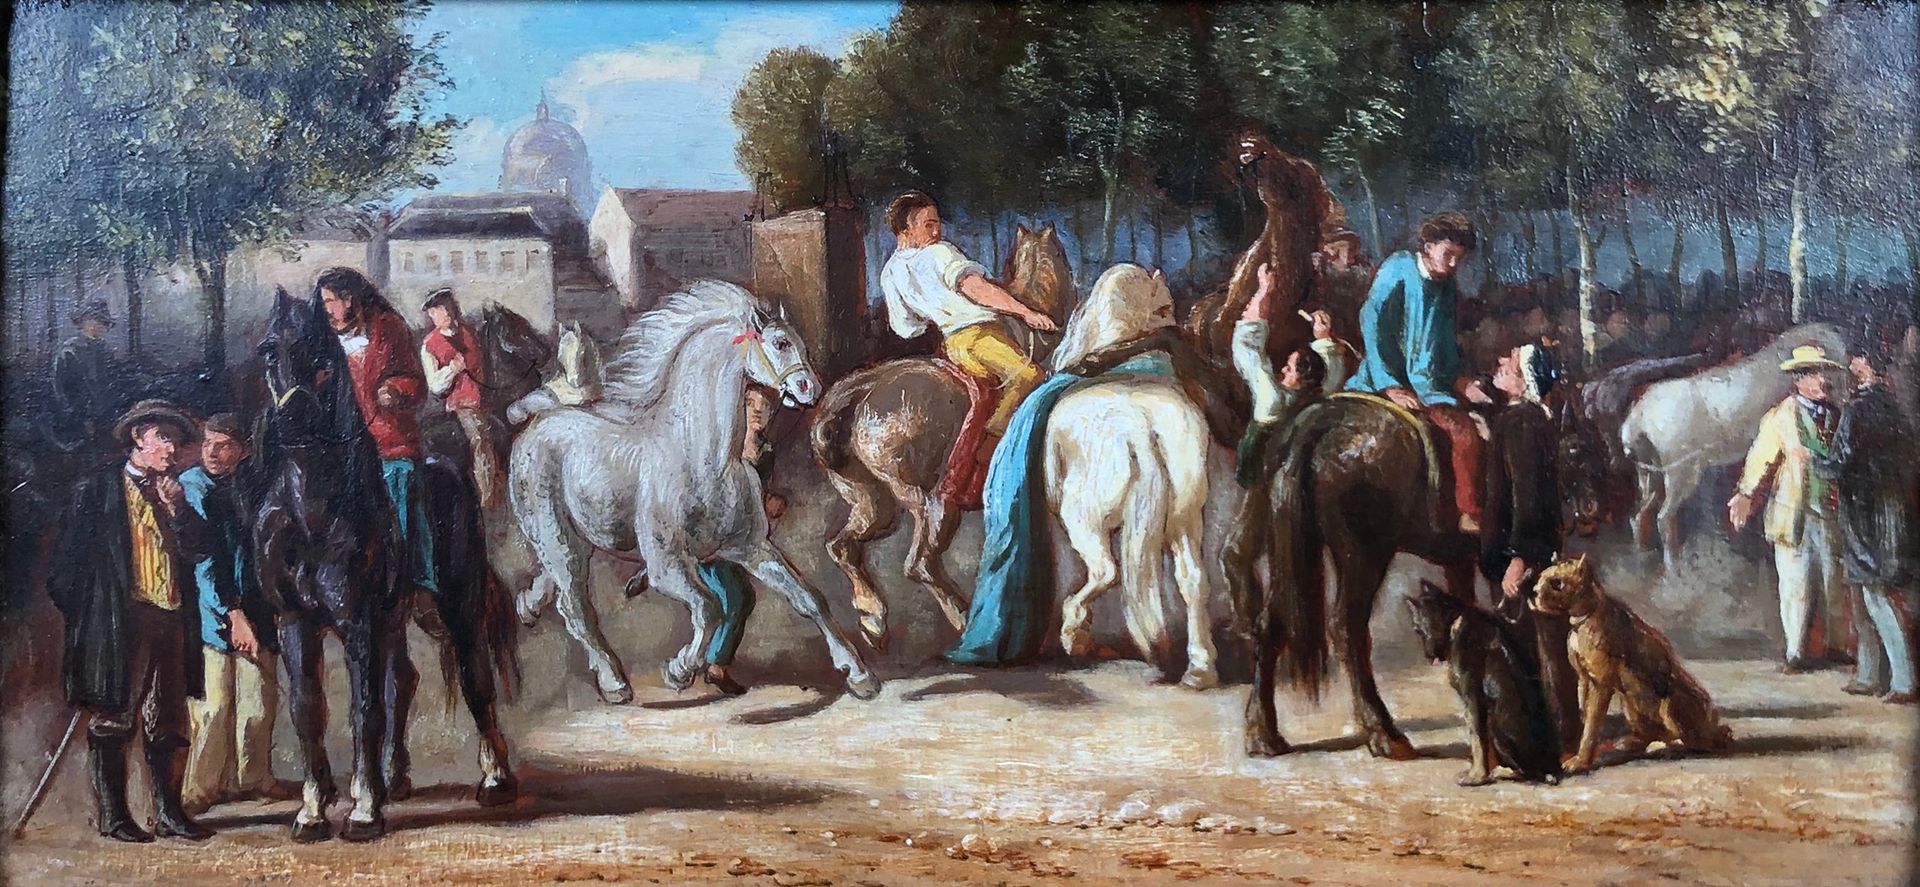 Null Escuela del siglo XIX según Théodore GERICAULT (1791-1824)

El mercado de c&hellip;